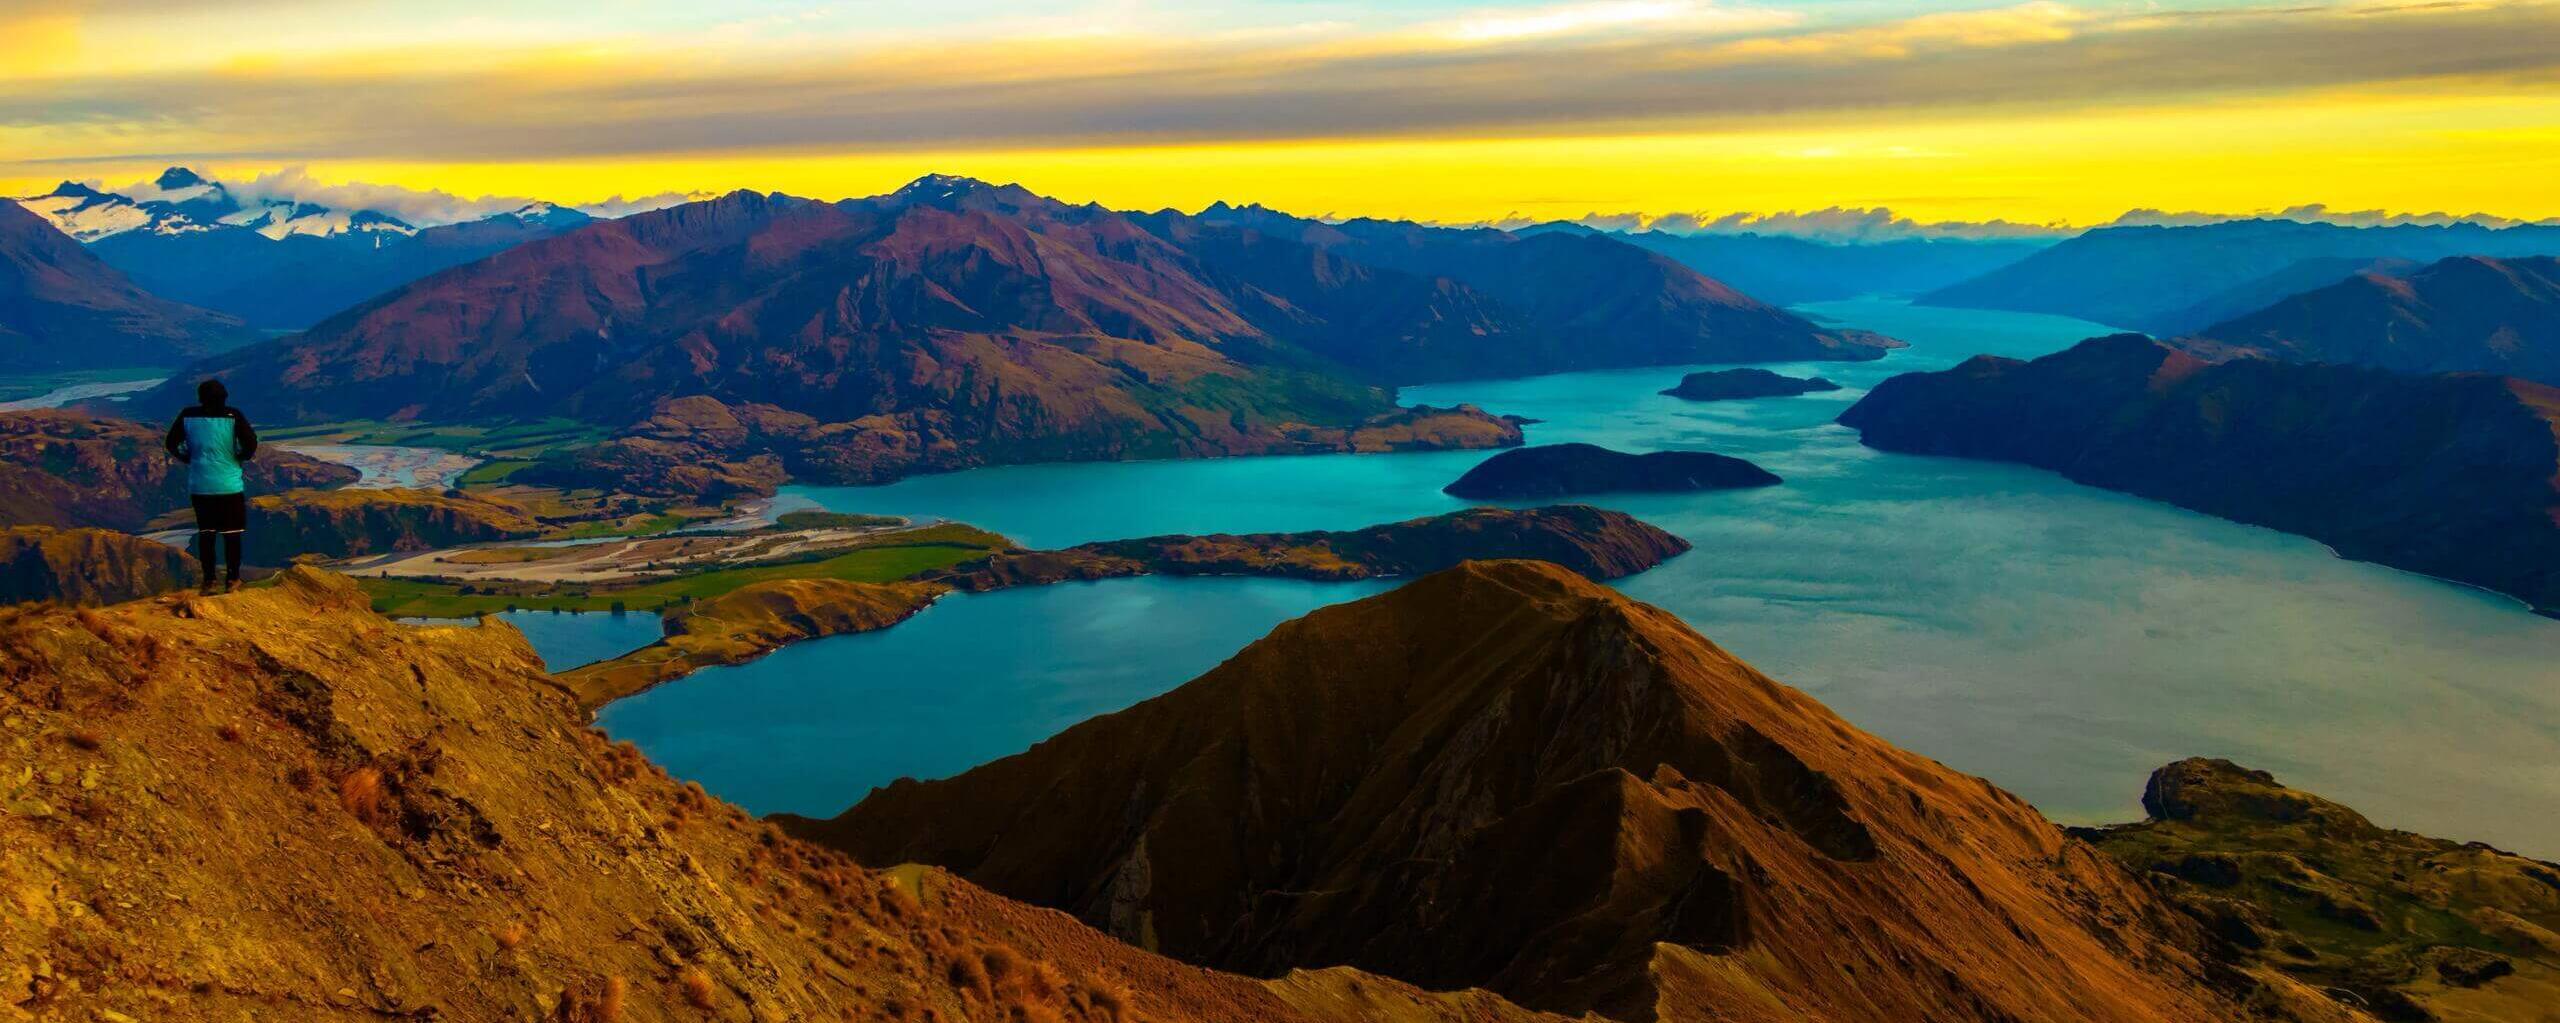 Deine Bucketlist für Neuseeland | 10 Must Do’s und See’s 